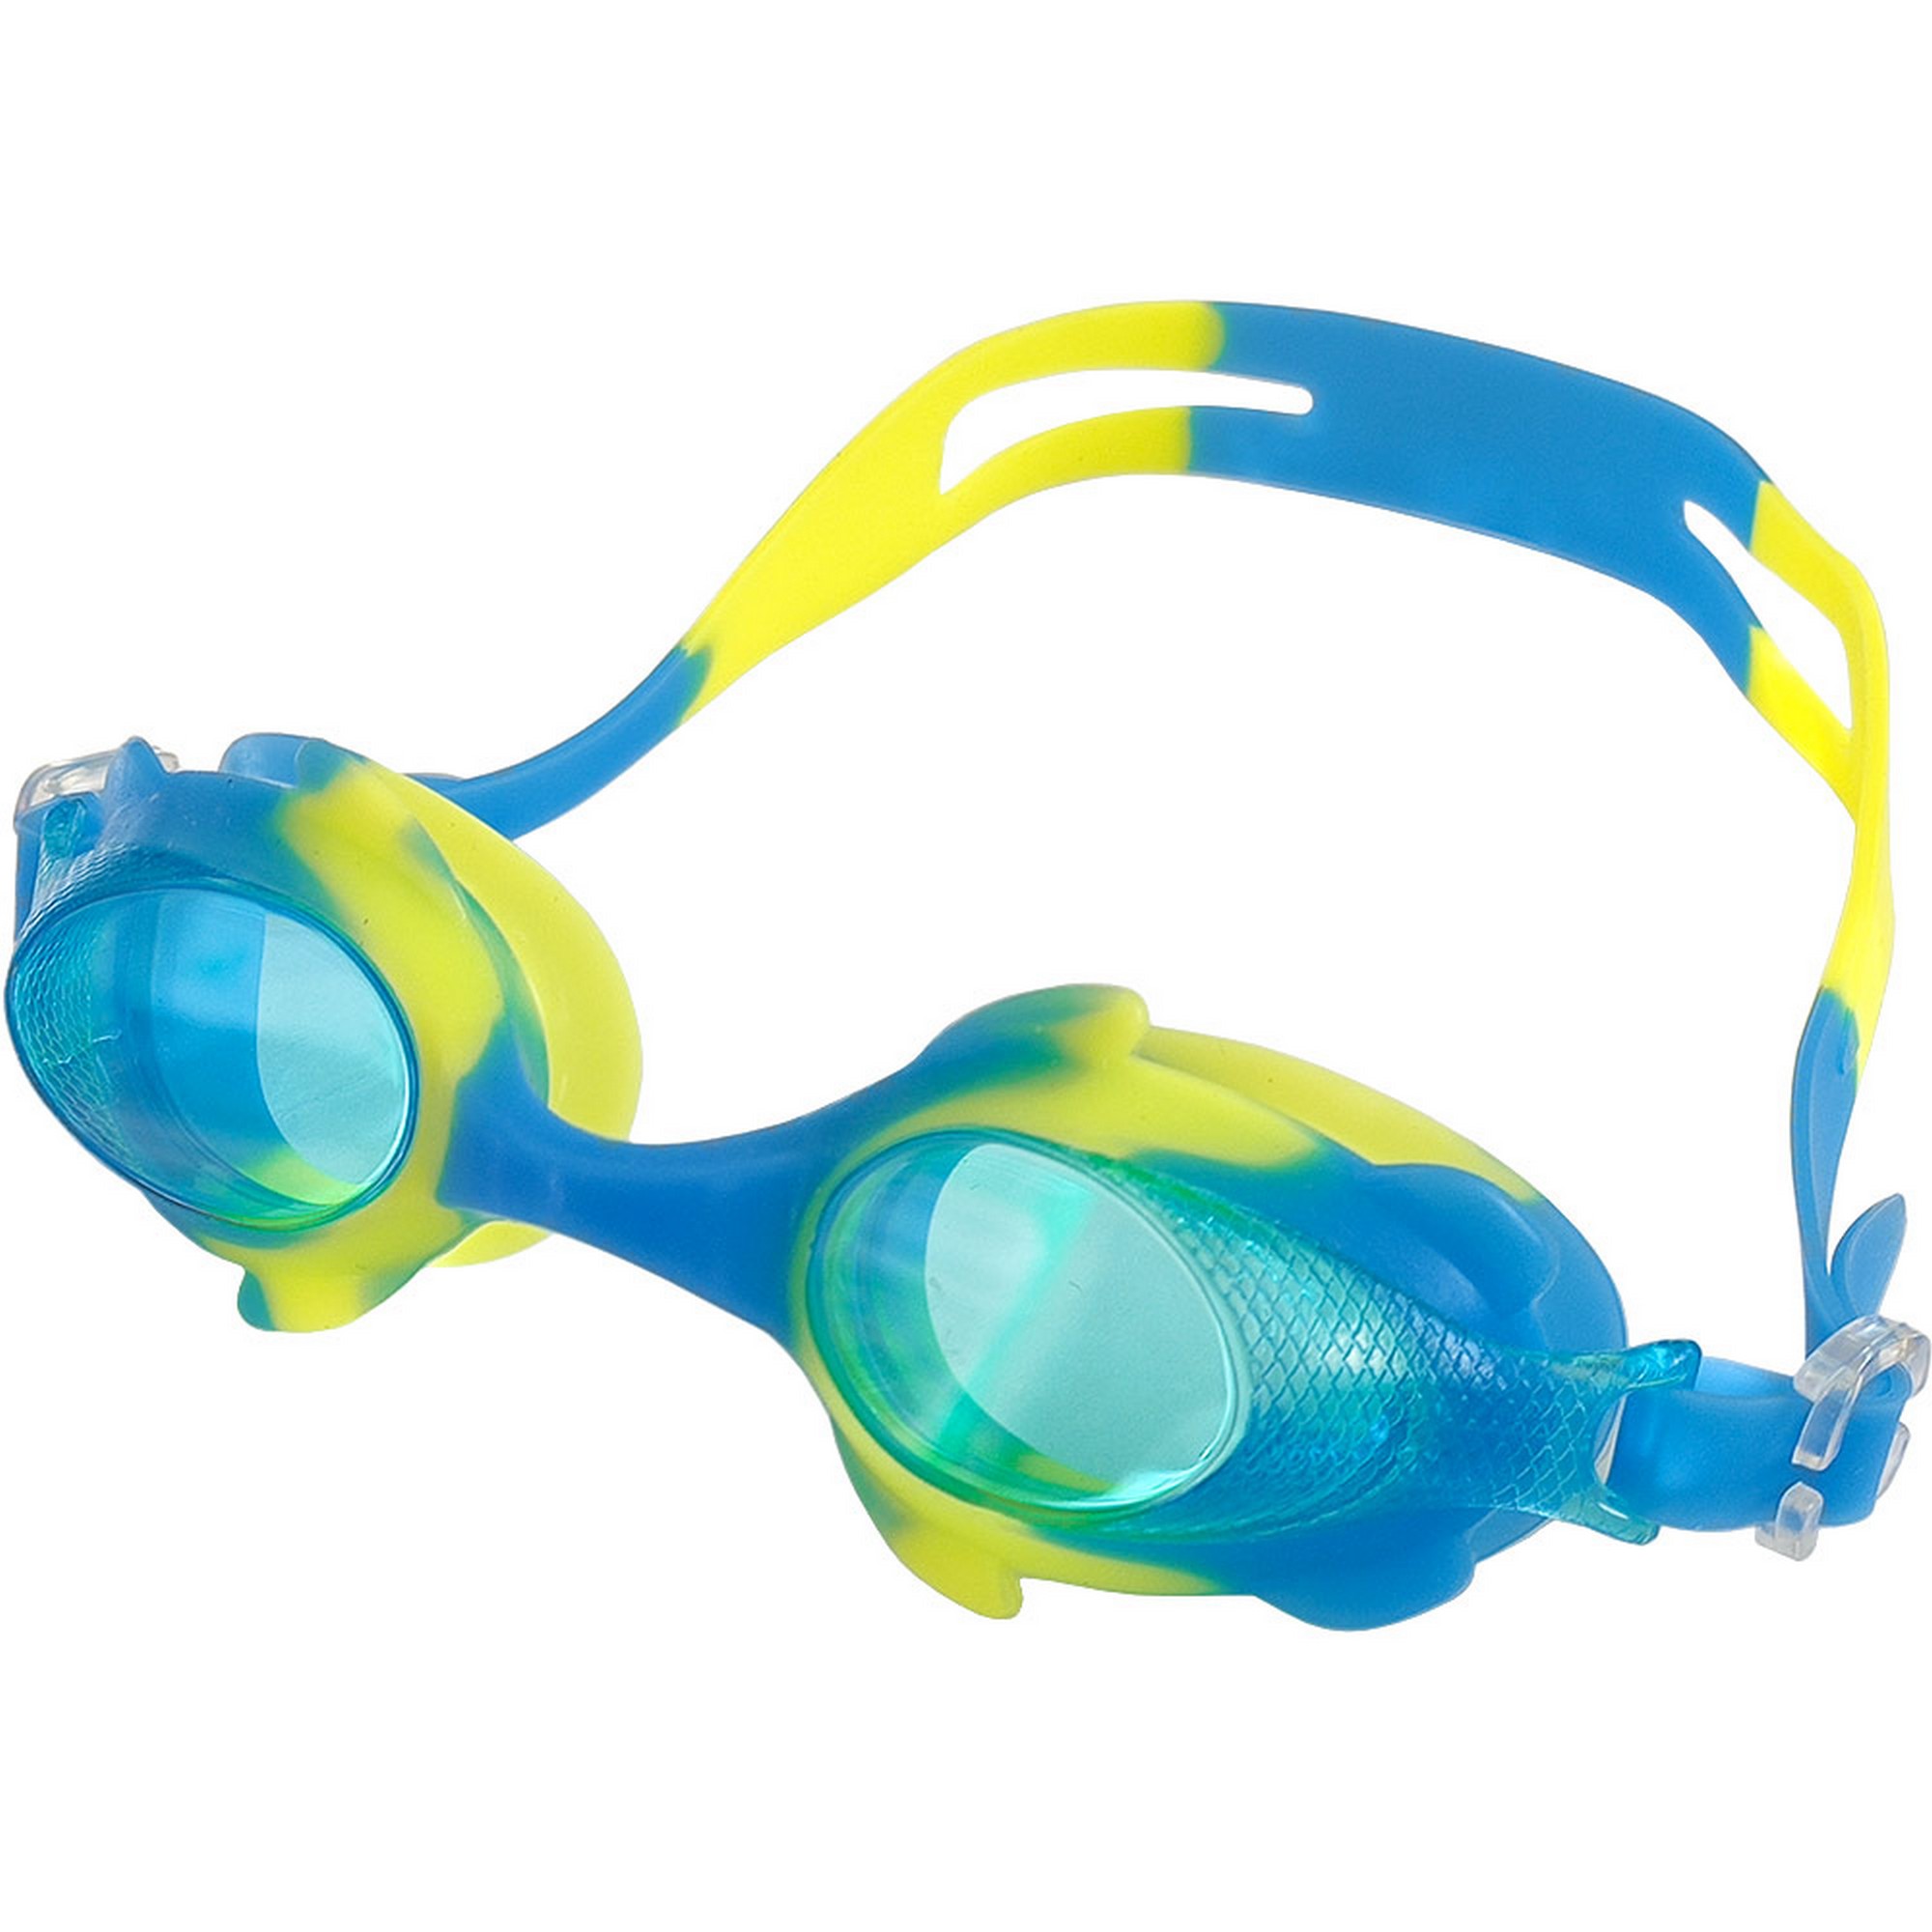 Купить Очки для плавания Sportex детскиеюниорские R18166-3 голубойжелтый,